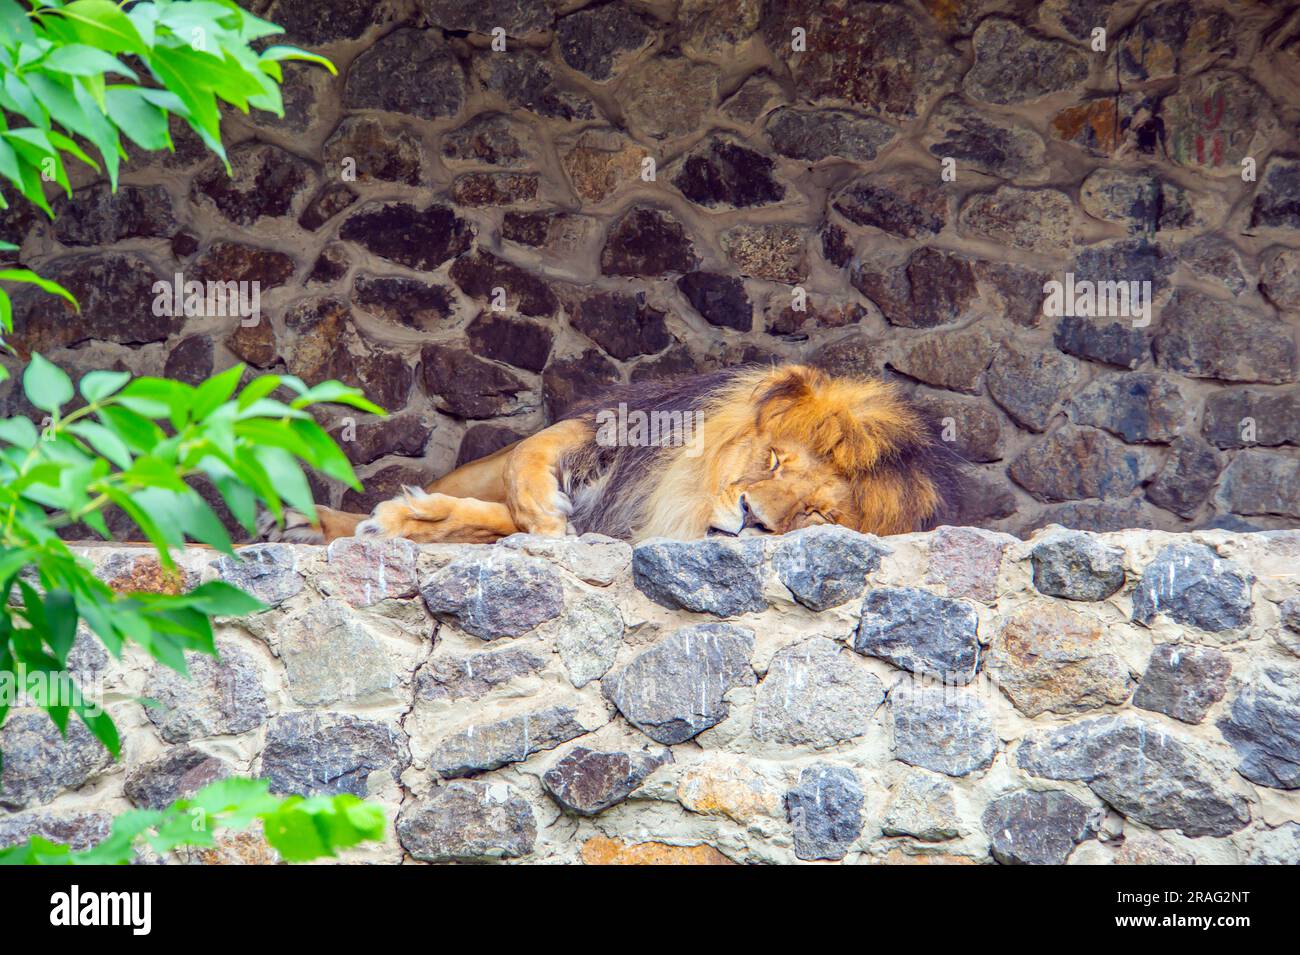 Le Lion dort paisiblement sur quelques rochers. Le lion dort sur les rochers contre un mur de briques. Un lion mâle dormant paisiblement après le petit déjeuner. Un grand Banque D'Images